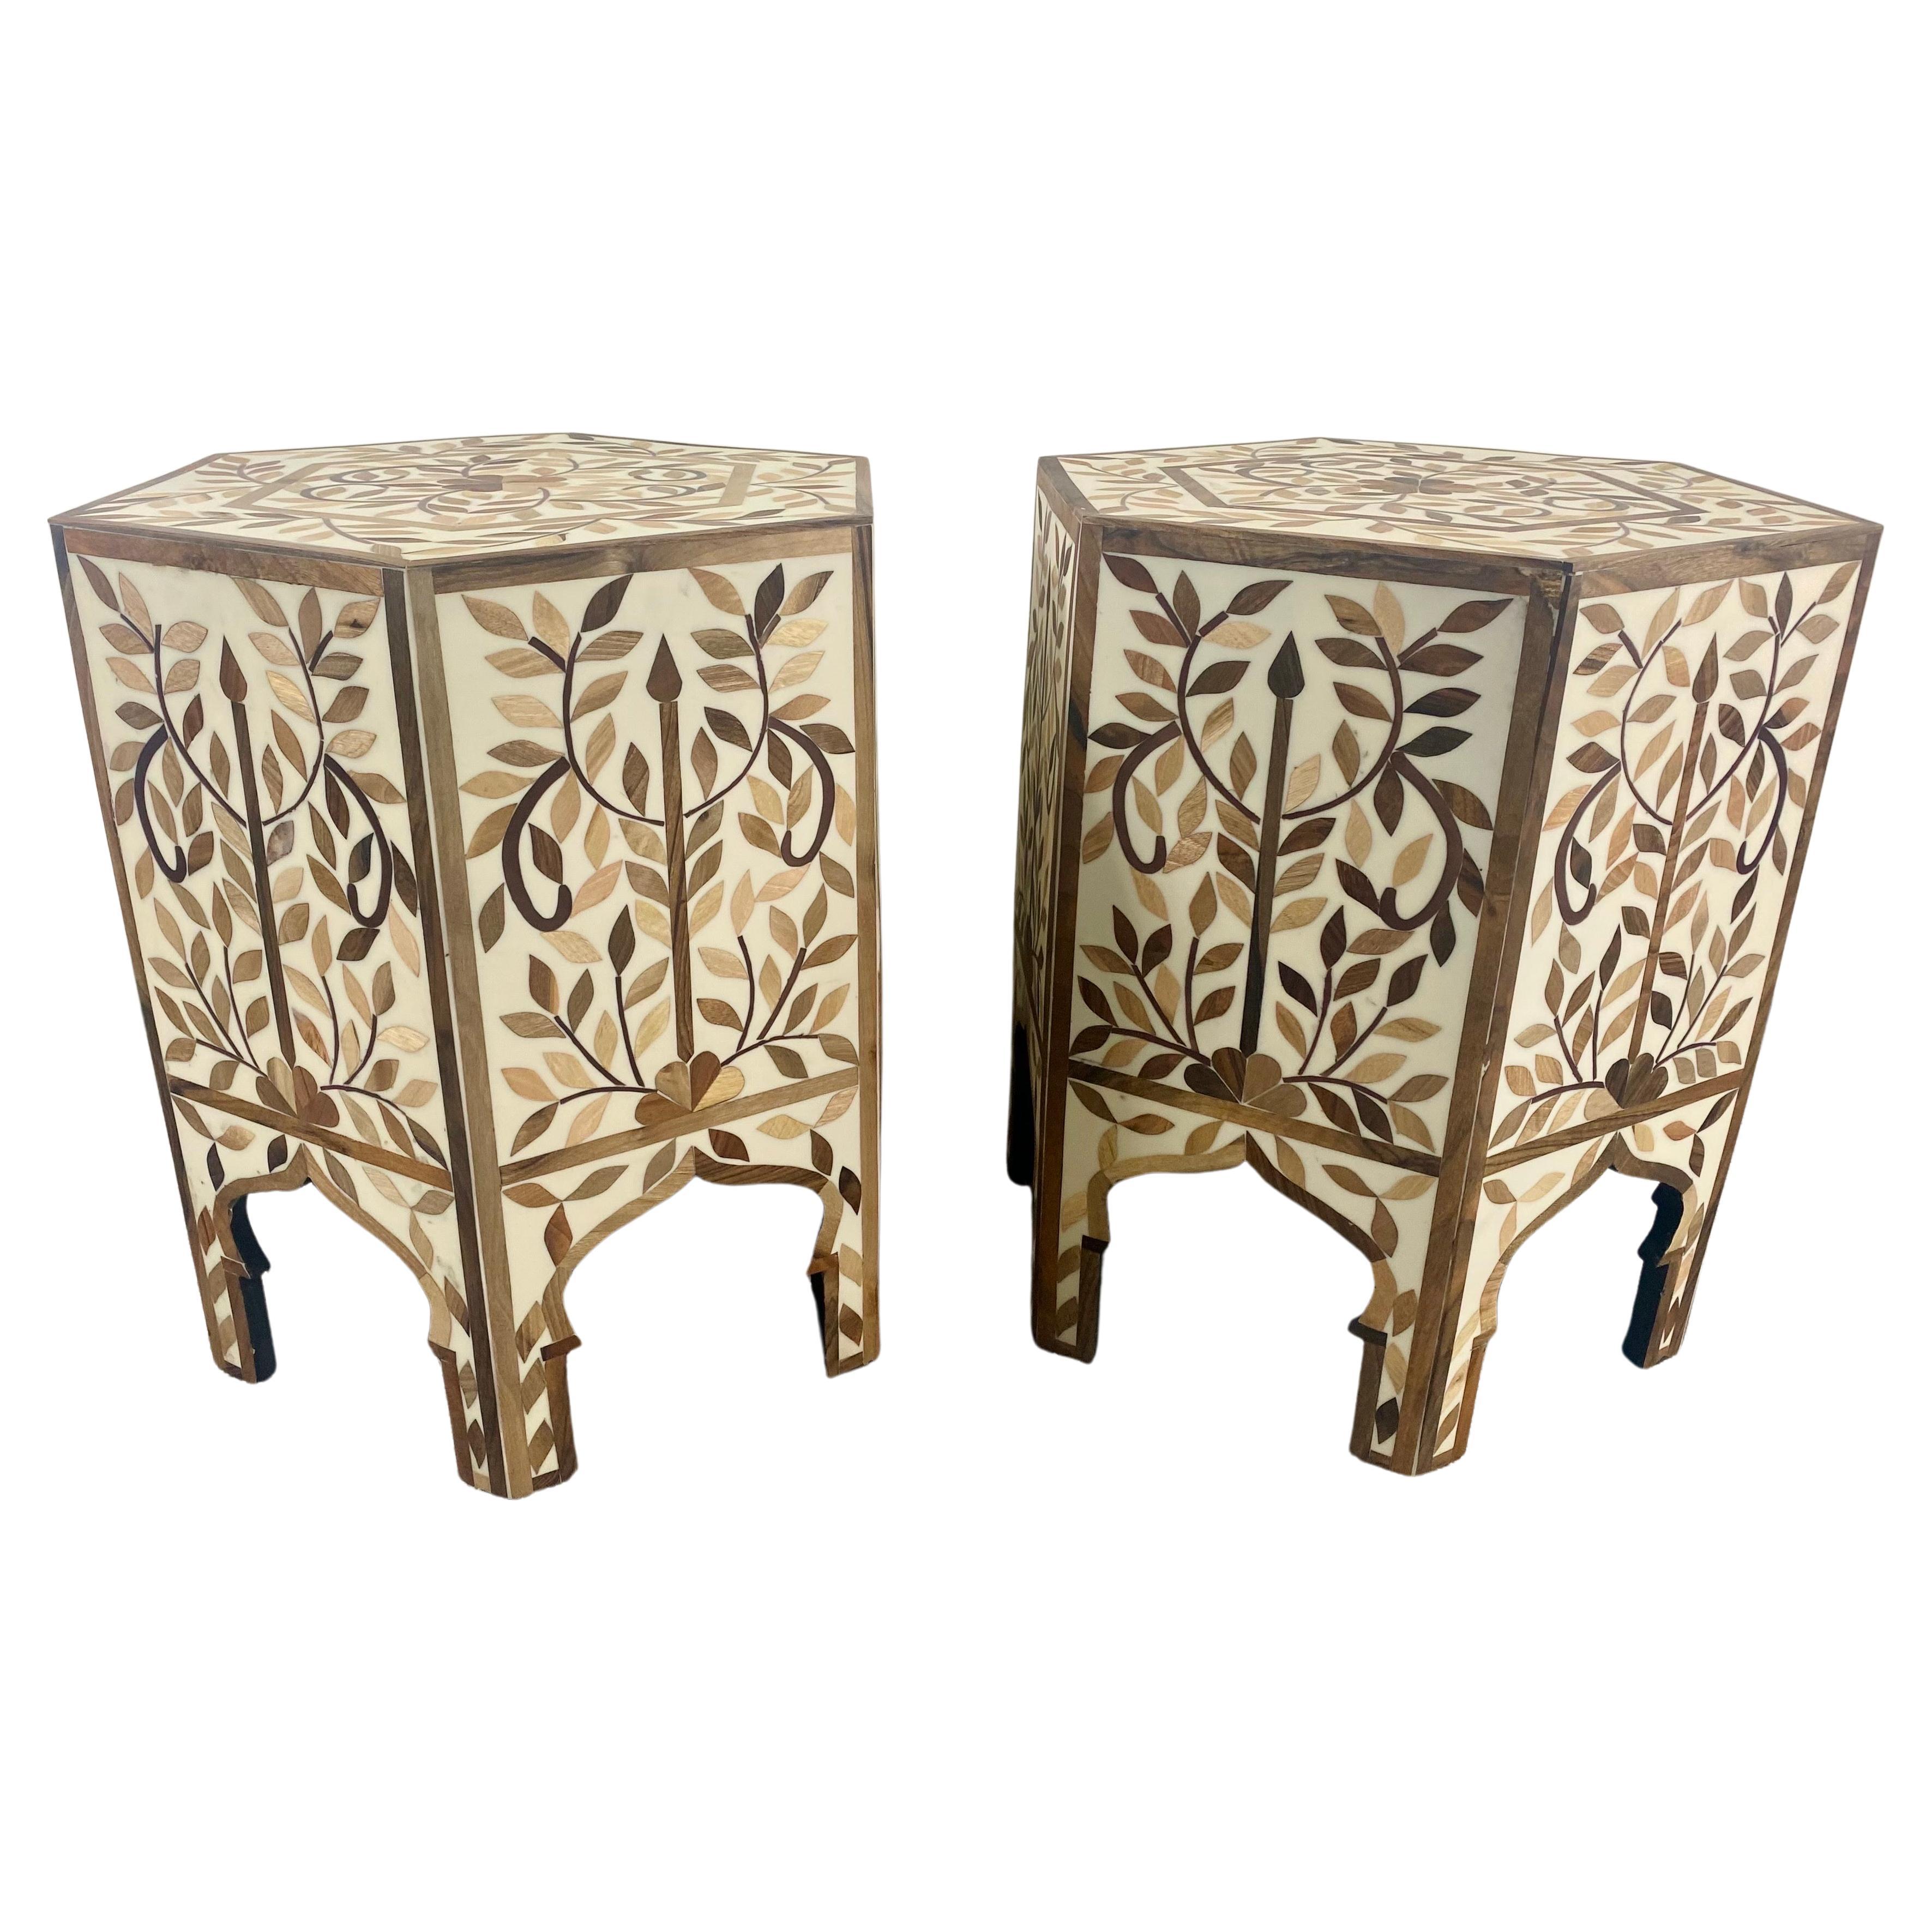 Ein exquisites Paar marokkanischer Beistell- oder Beistelltische im Boho-Chic, die eine sechseckige Form aufweisen. Die handgefertigten Tische sind fein verziert in Blättern Muster und schöne Bögen, ein Grundnahrungsmittel der maurischen zeitlose